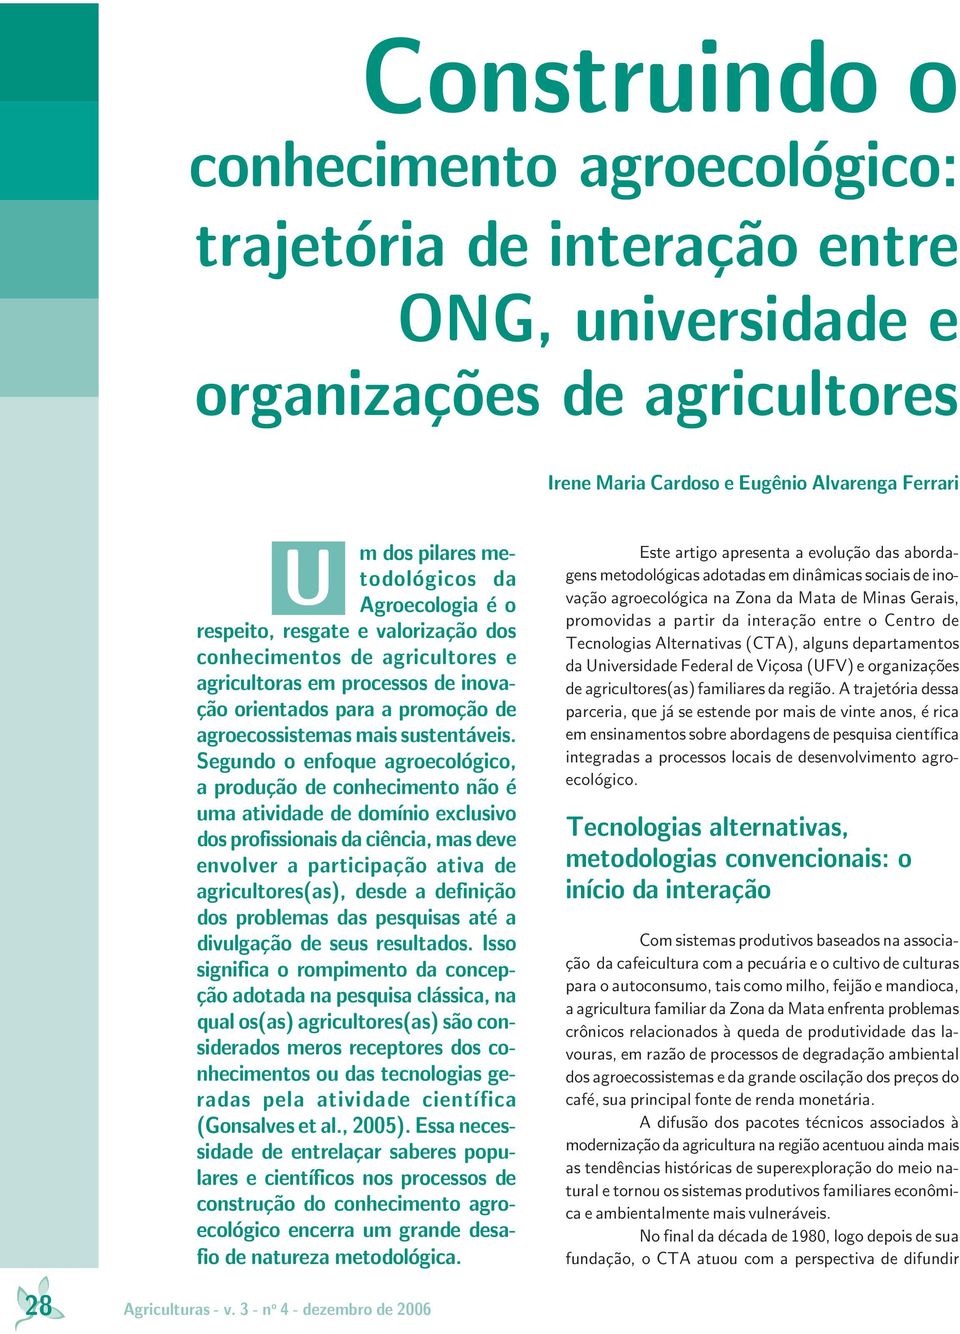 Segundo o enfoque agroecológico, a produção de conhecimento não é uma atividade de domínio exclusivo dos profissionais da ciência, mas deve envolver a participação ativa de agricultores(as), desde a